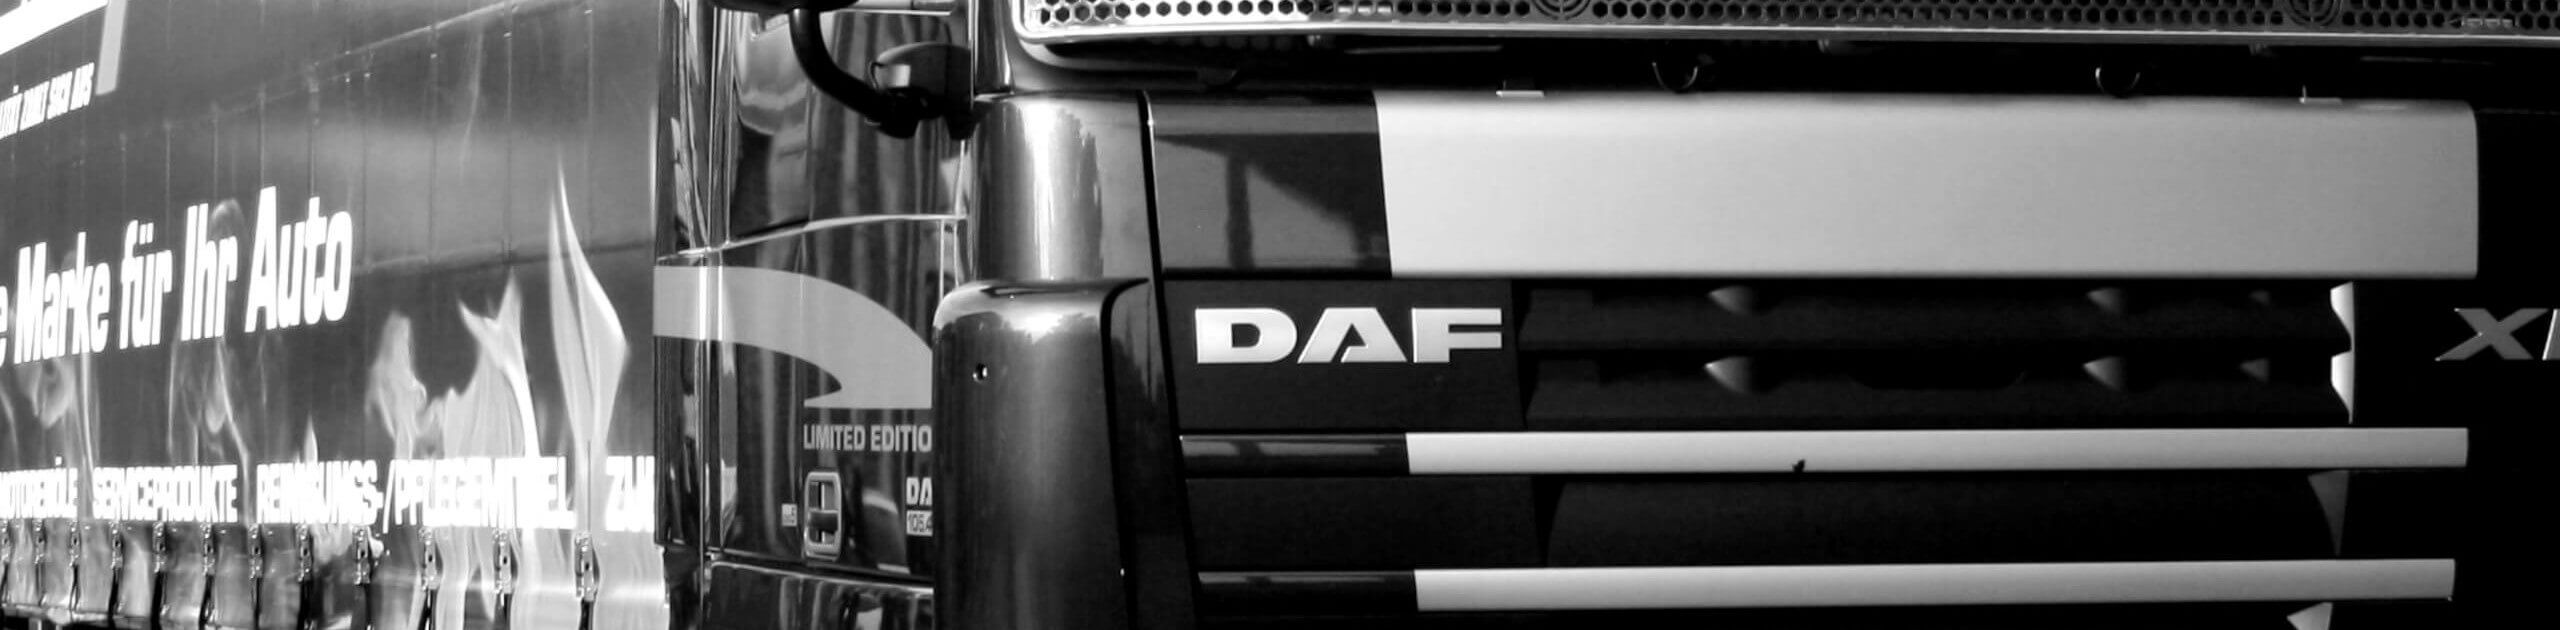 Schwarzweiß-Bild eines limitierten, schwarzen DAF-Trucks mit großem Frontgrill